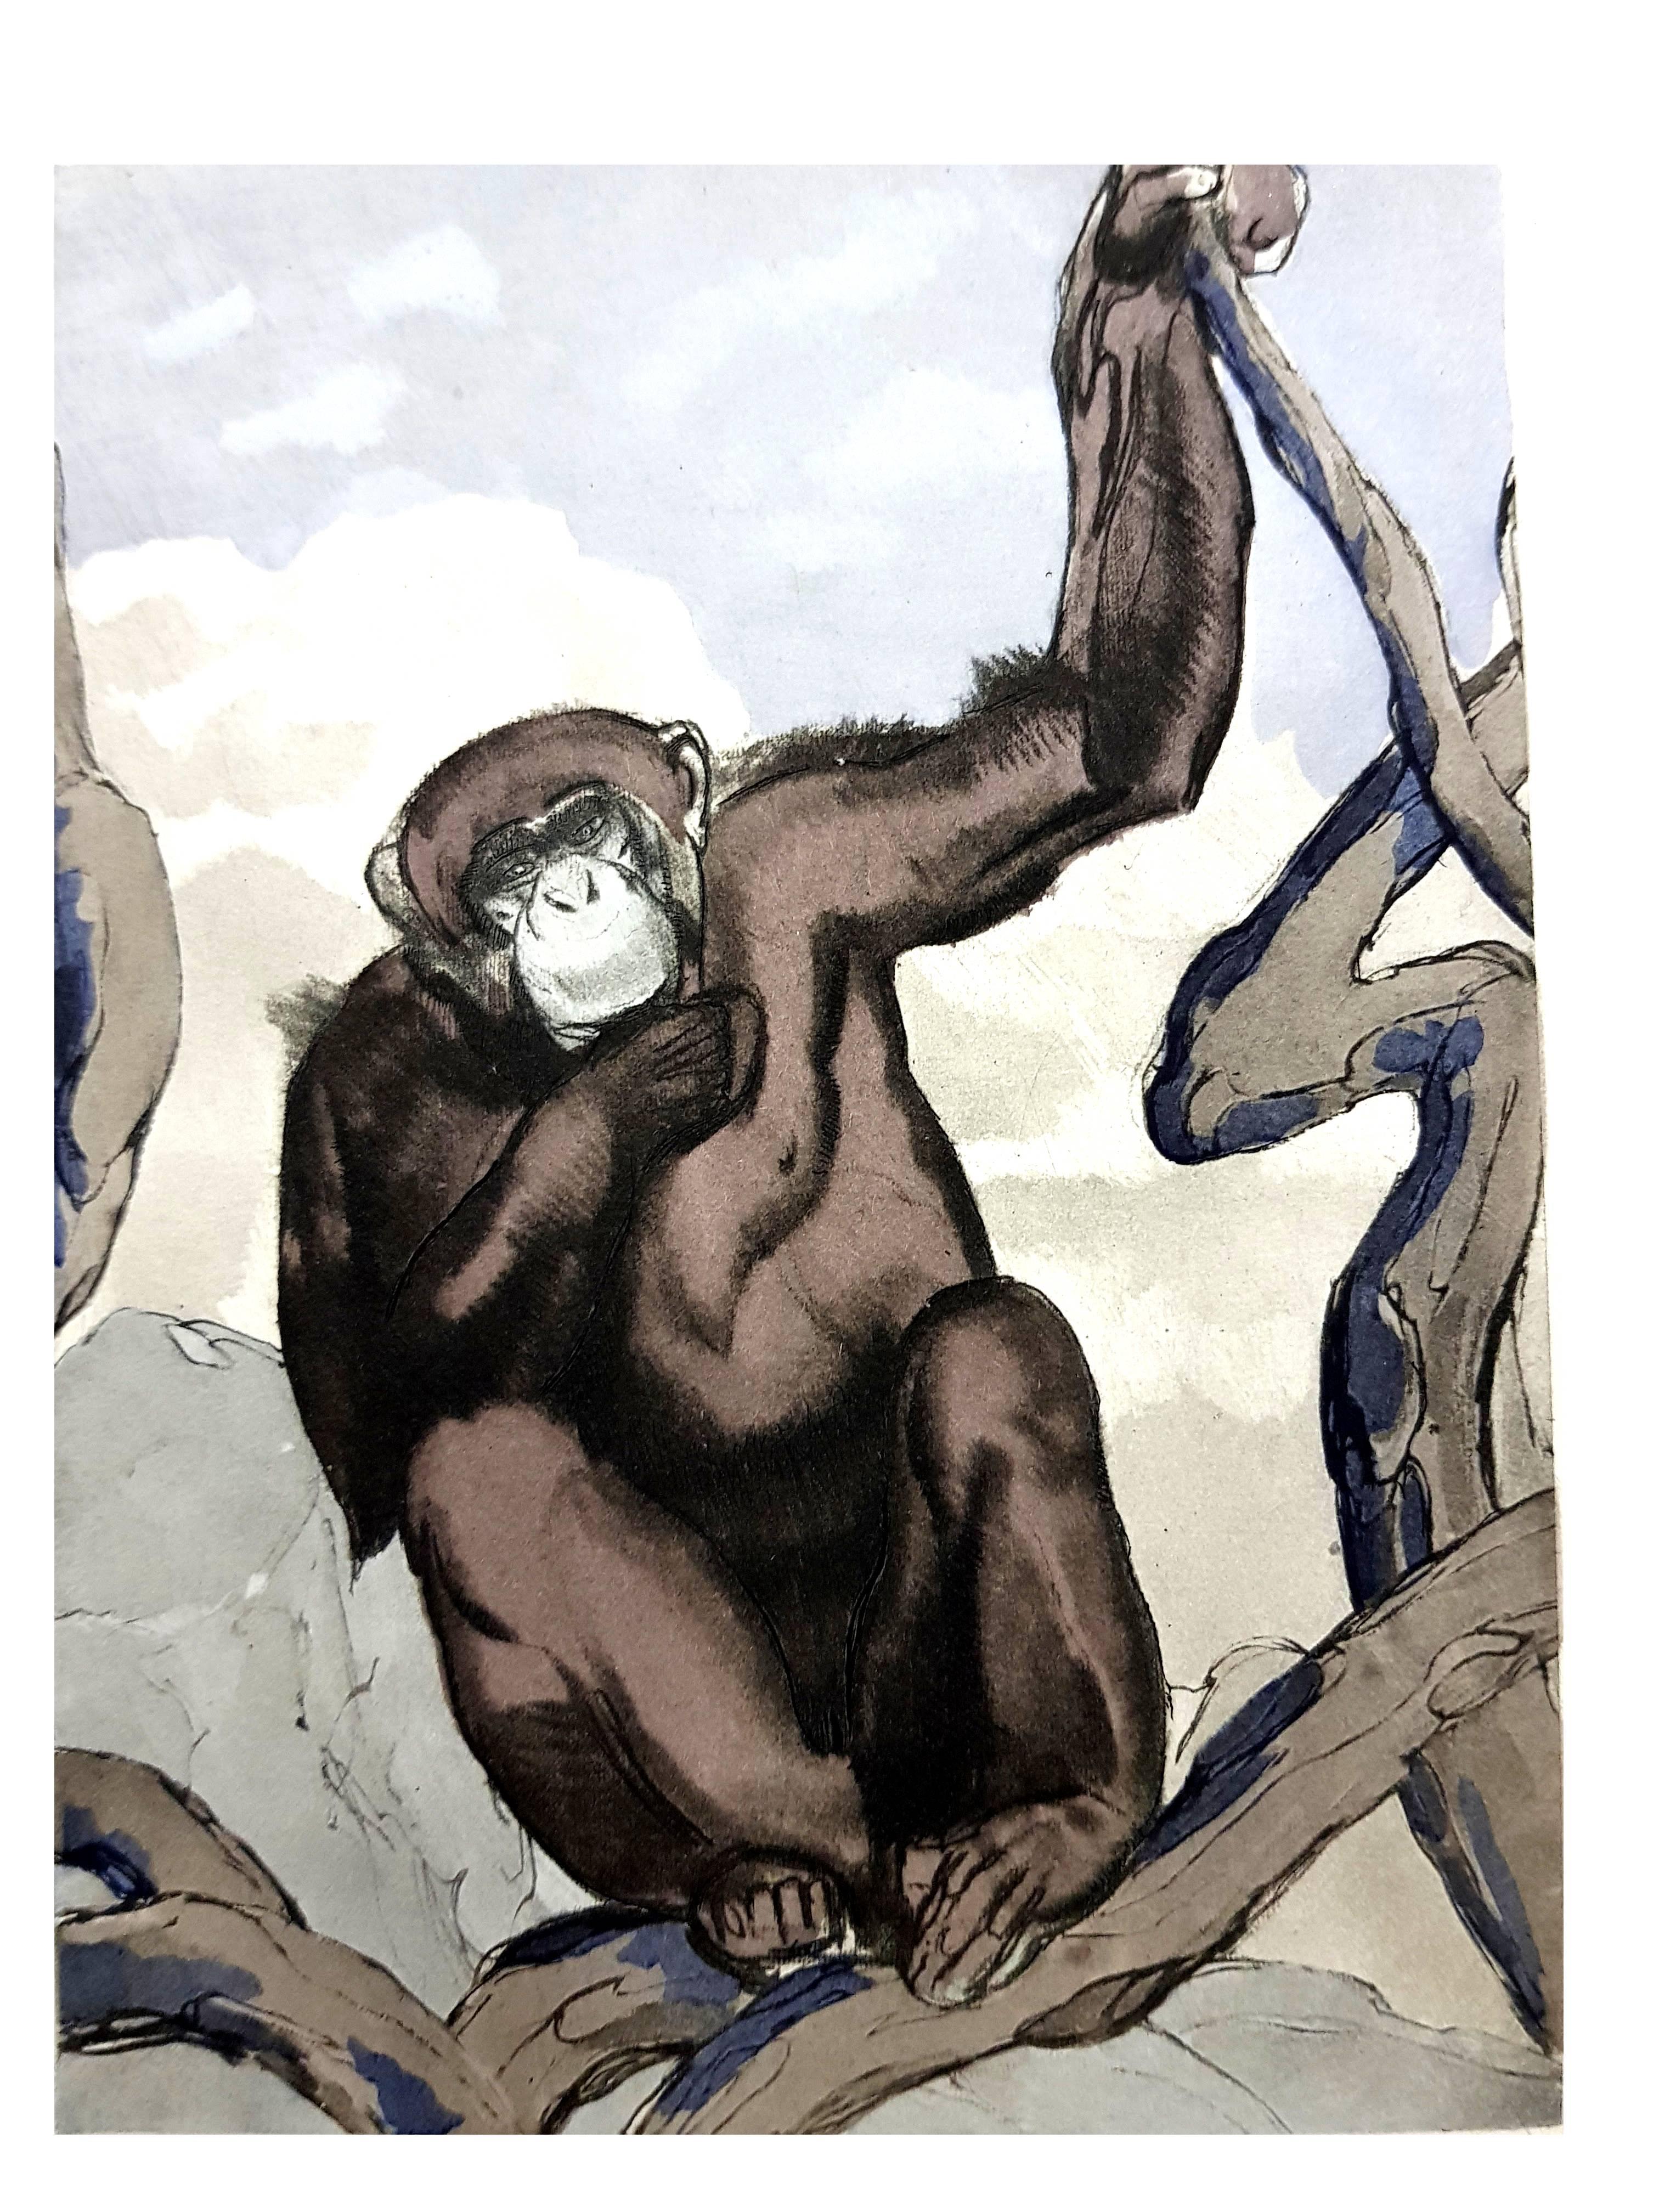 Pierre-Paul Jouve Figurative Print - Paul Jouve - Chimpanzee - Original Engraving